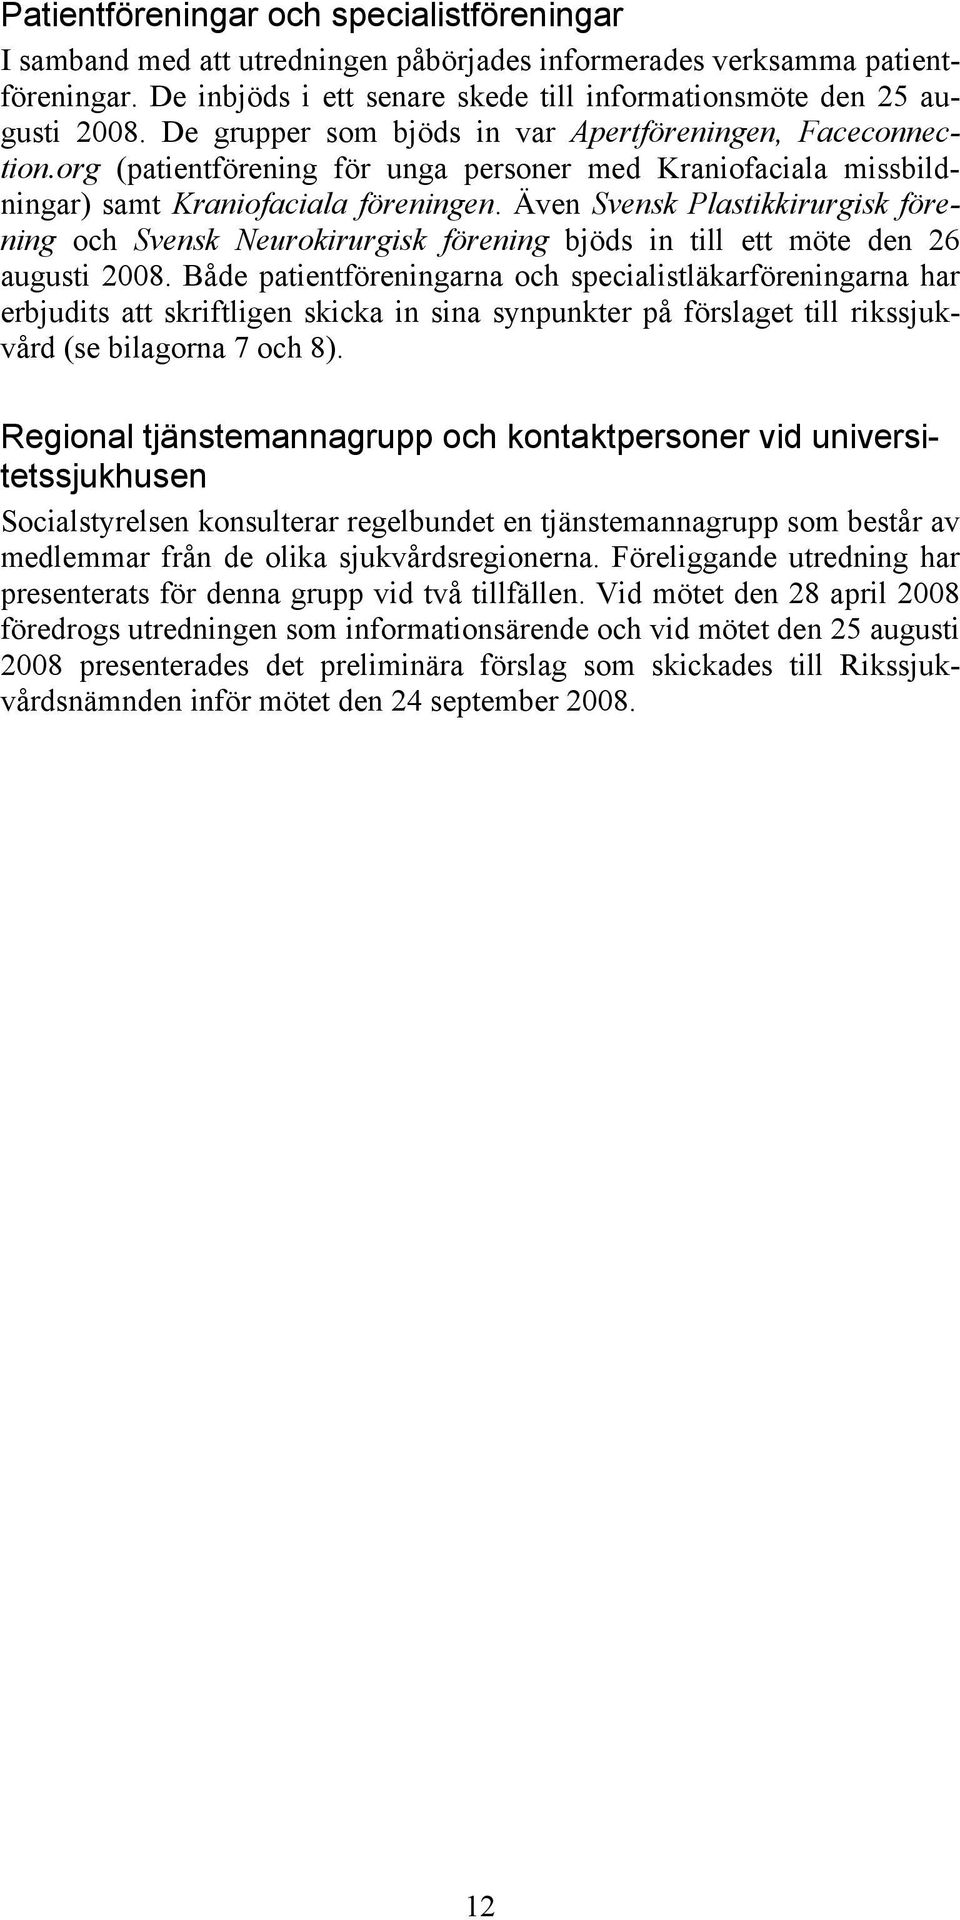 Även Svensk Plastikkirurgisk förening och Svensk Neurokirurgisk förening bjöds in till ett möte den 26 augusti 2008.